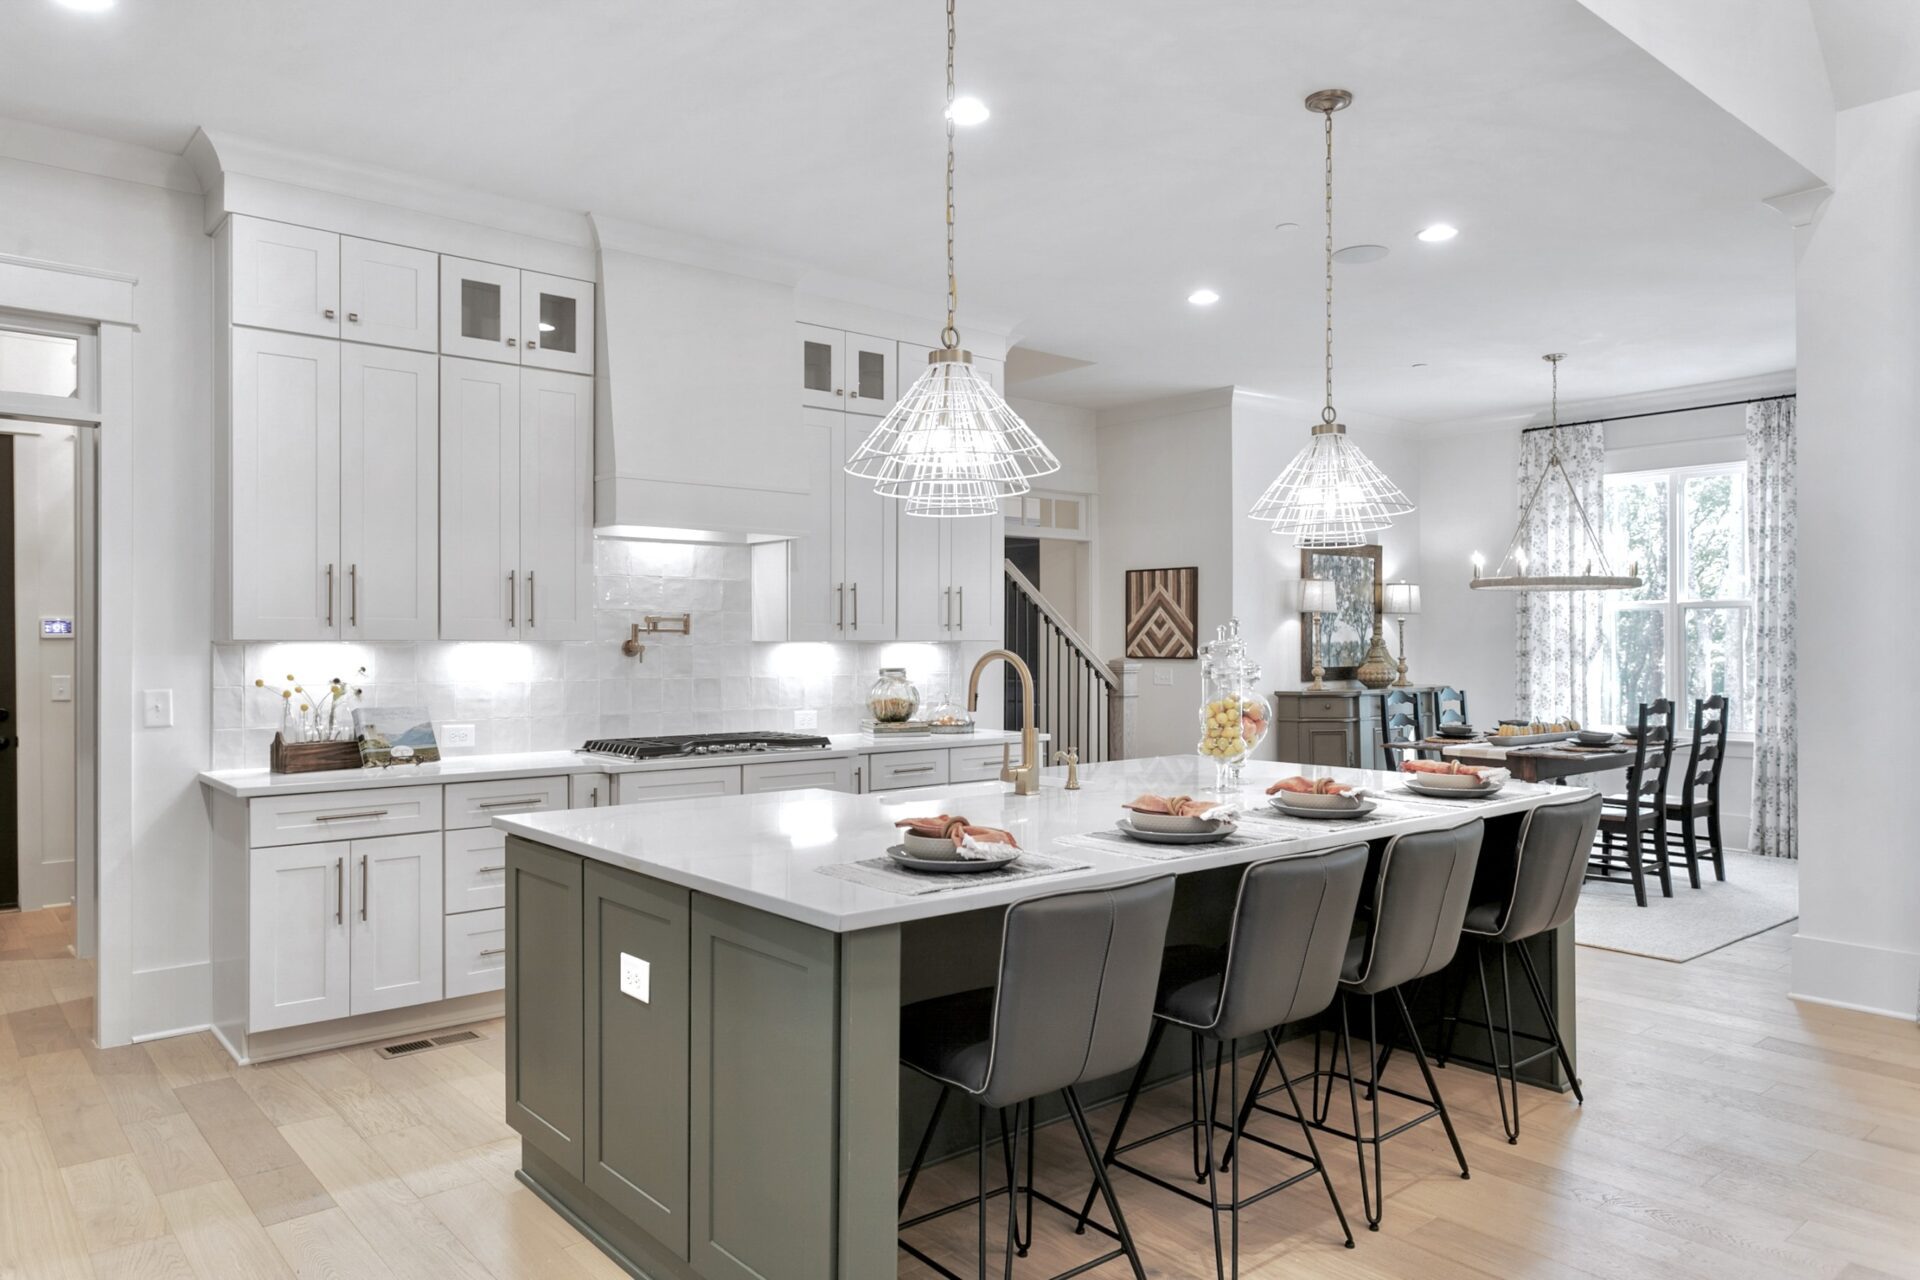 Modern, Luxury Kitchen | Nashville Luxury Homes - Home Builders